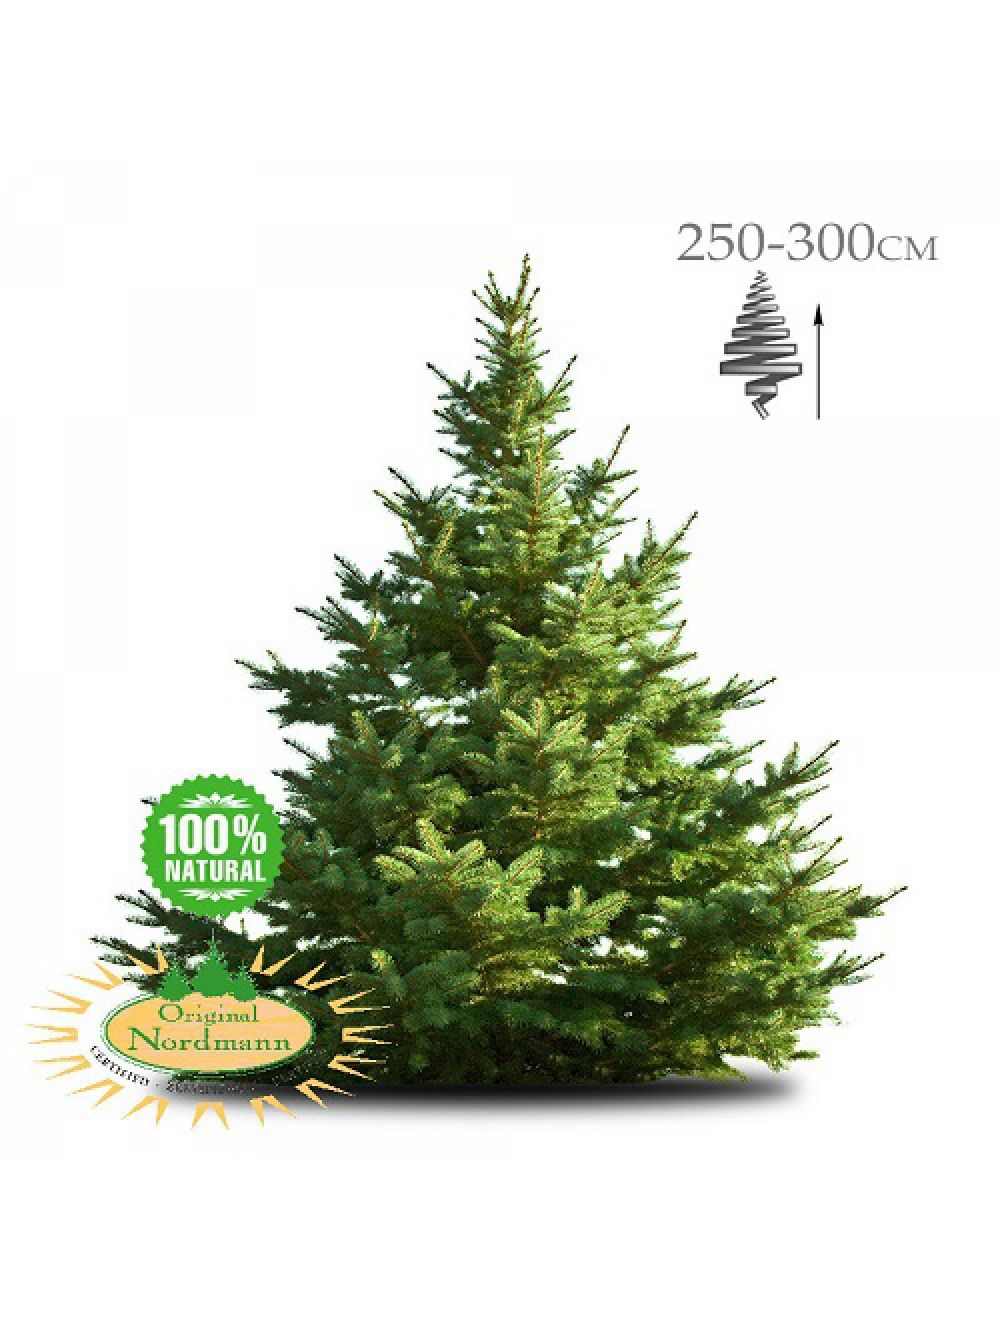 Gom Uitdrukkelijk doneren Geïmpregneerde Nordmann kerstboom 250-300 cm | Brandblussershop |  Brandblussershop